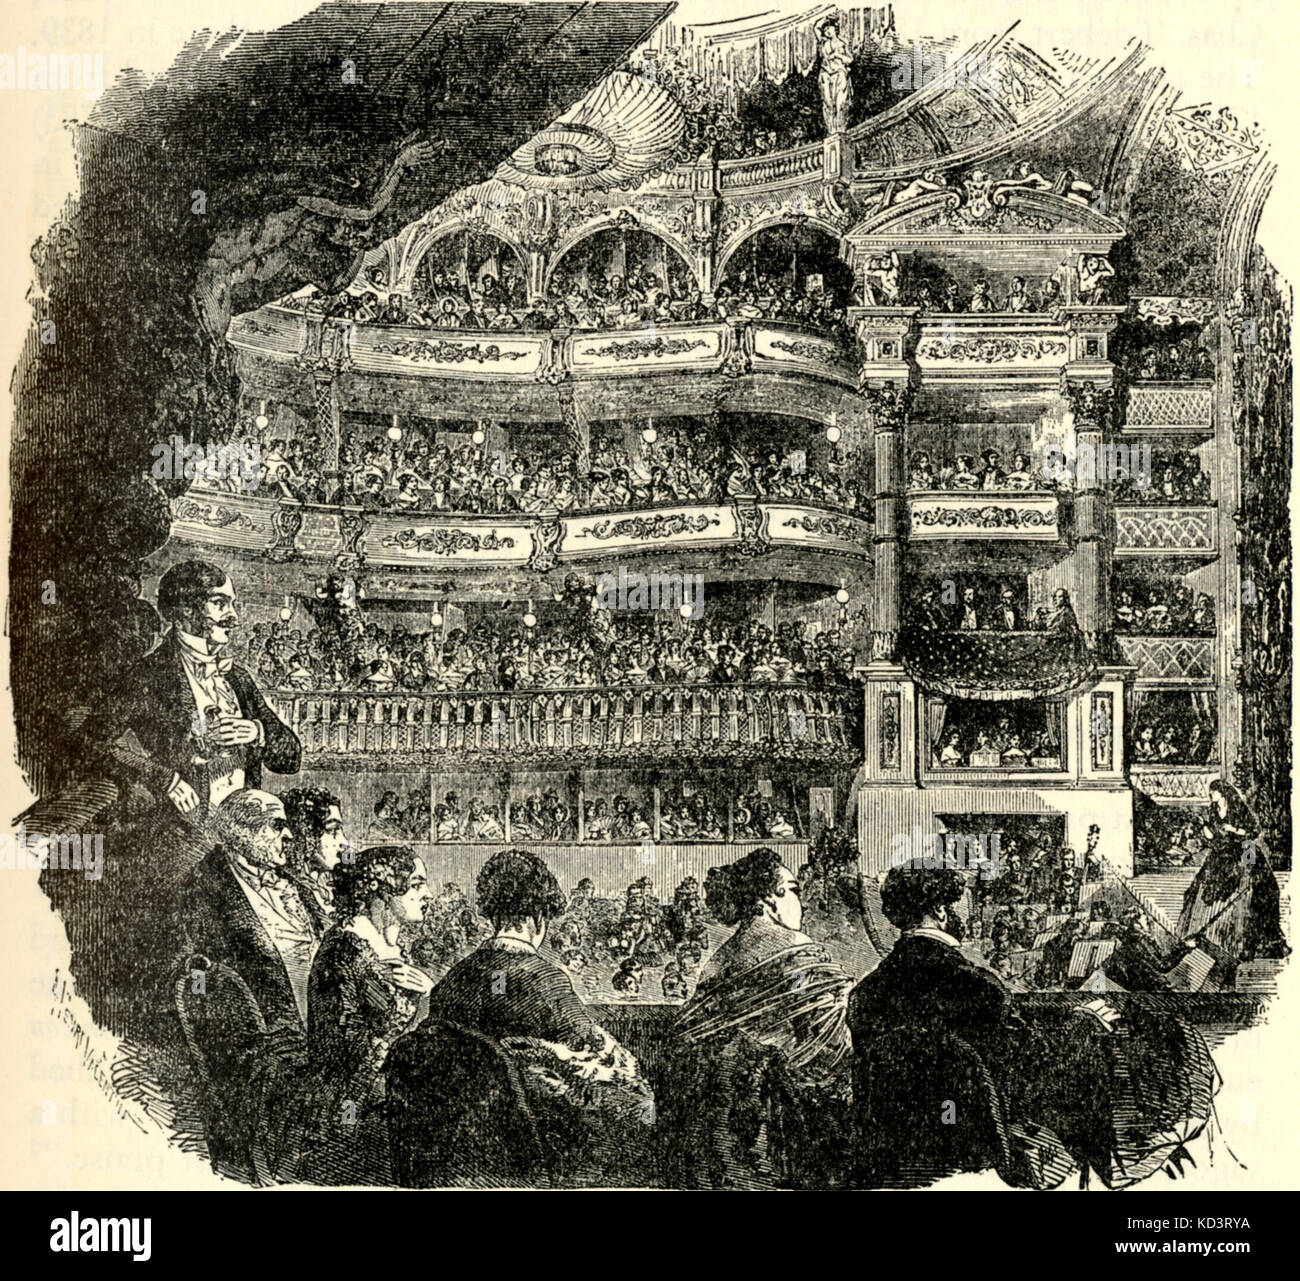 Rendimiento del siglo -19de París en la Salle Ventadour 1850. Foto de la audiencia. Conductor con arco de violín. Foto de stock